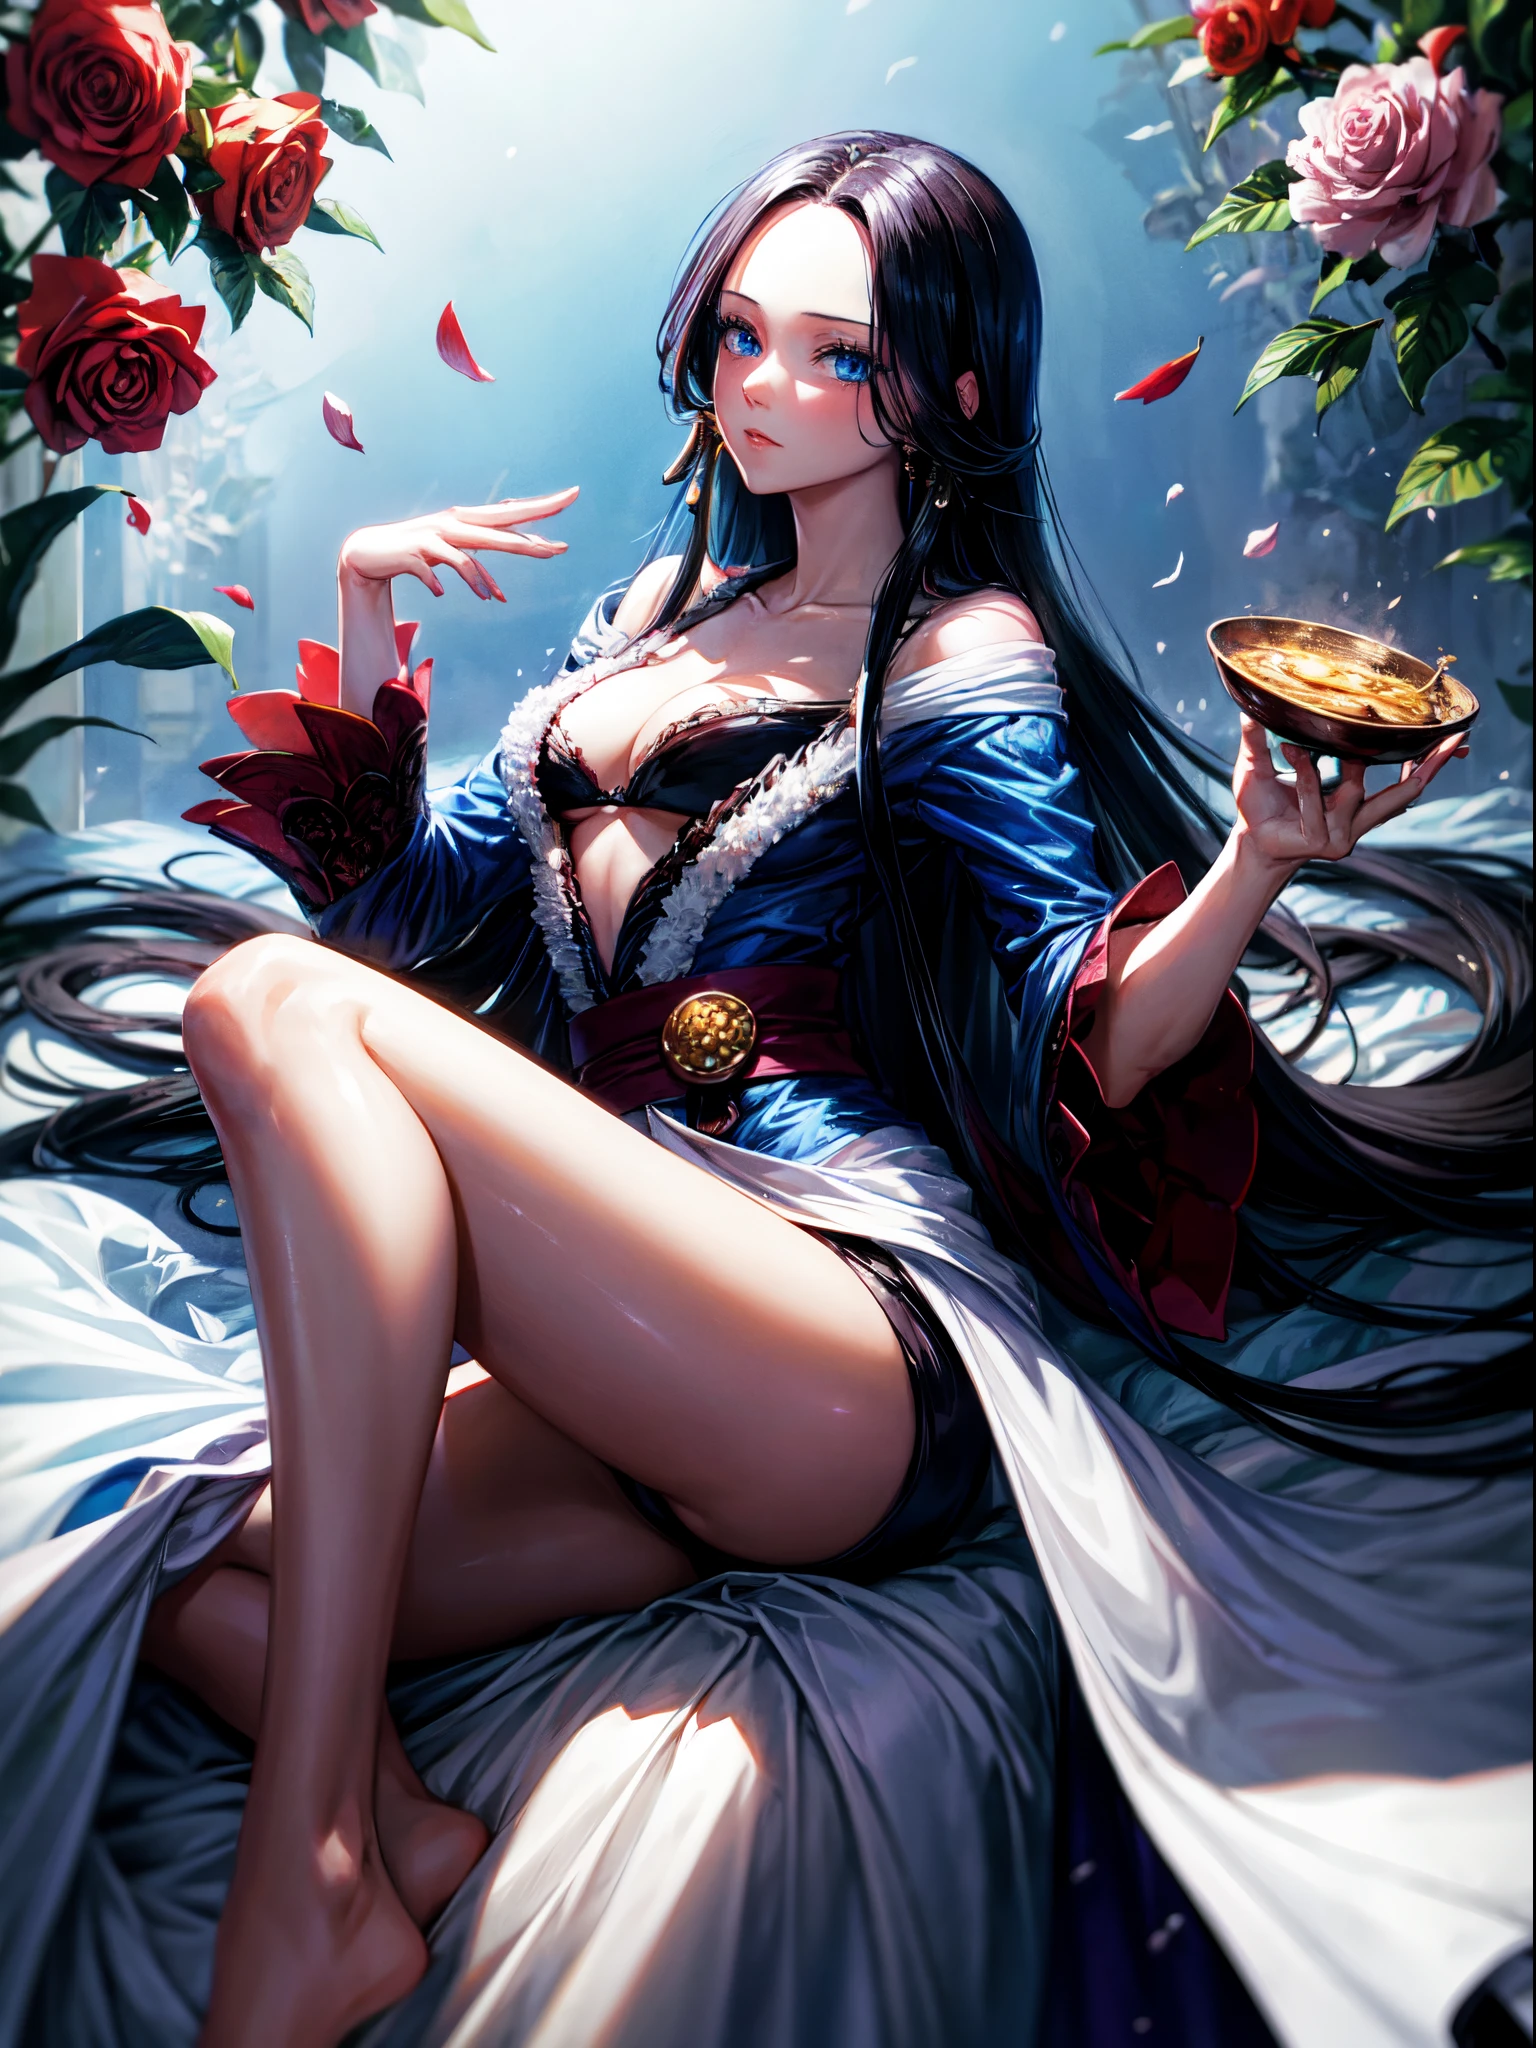 Handel, blaue Augen, Blumen, schwarze lange Haare, weißes Kleid Boa Hancock, Ein Stück